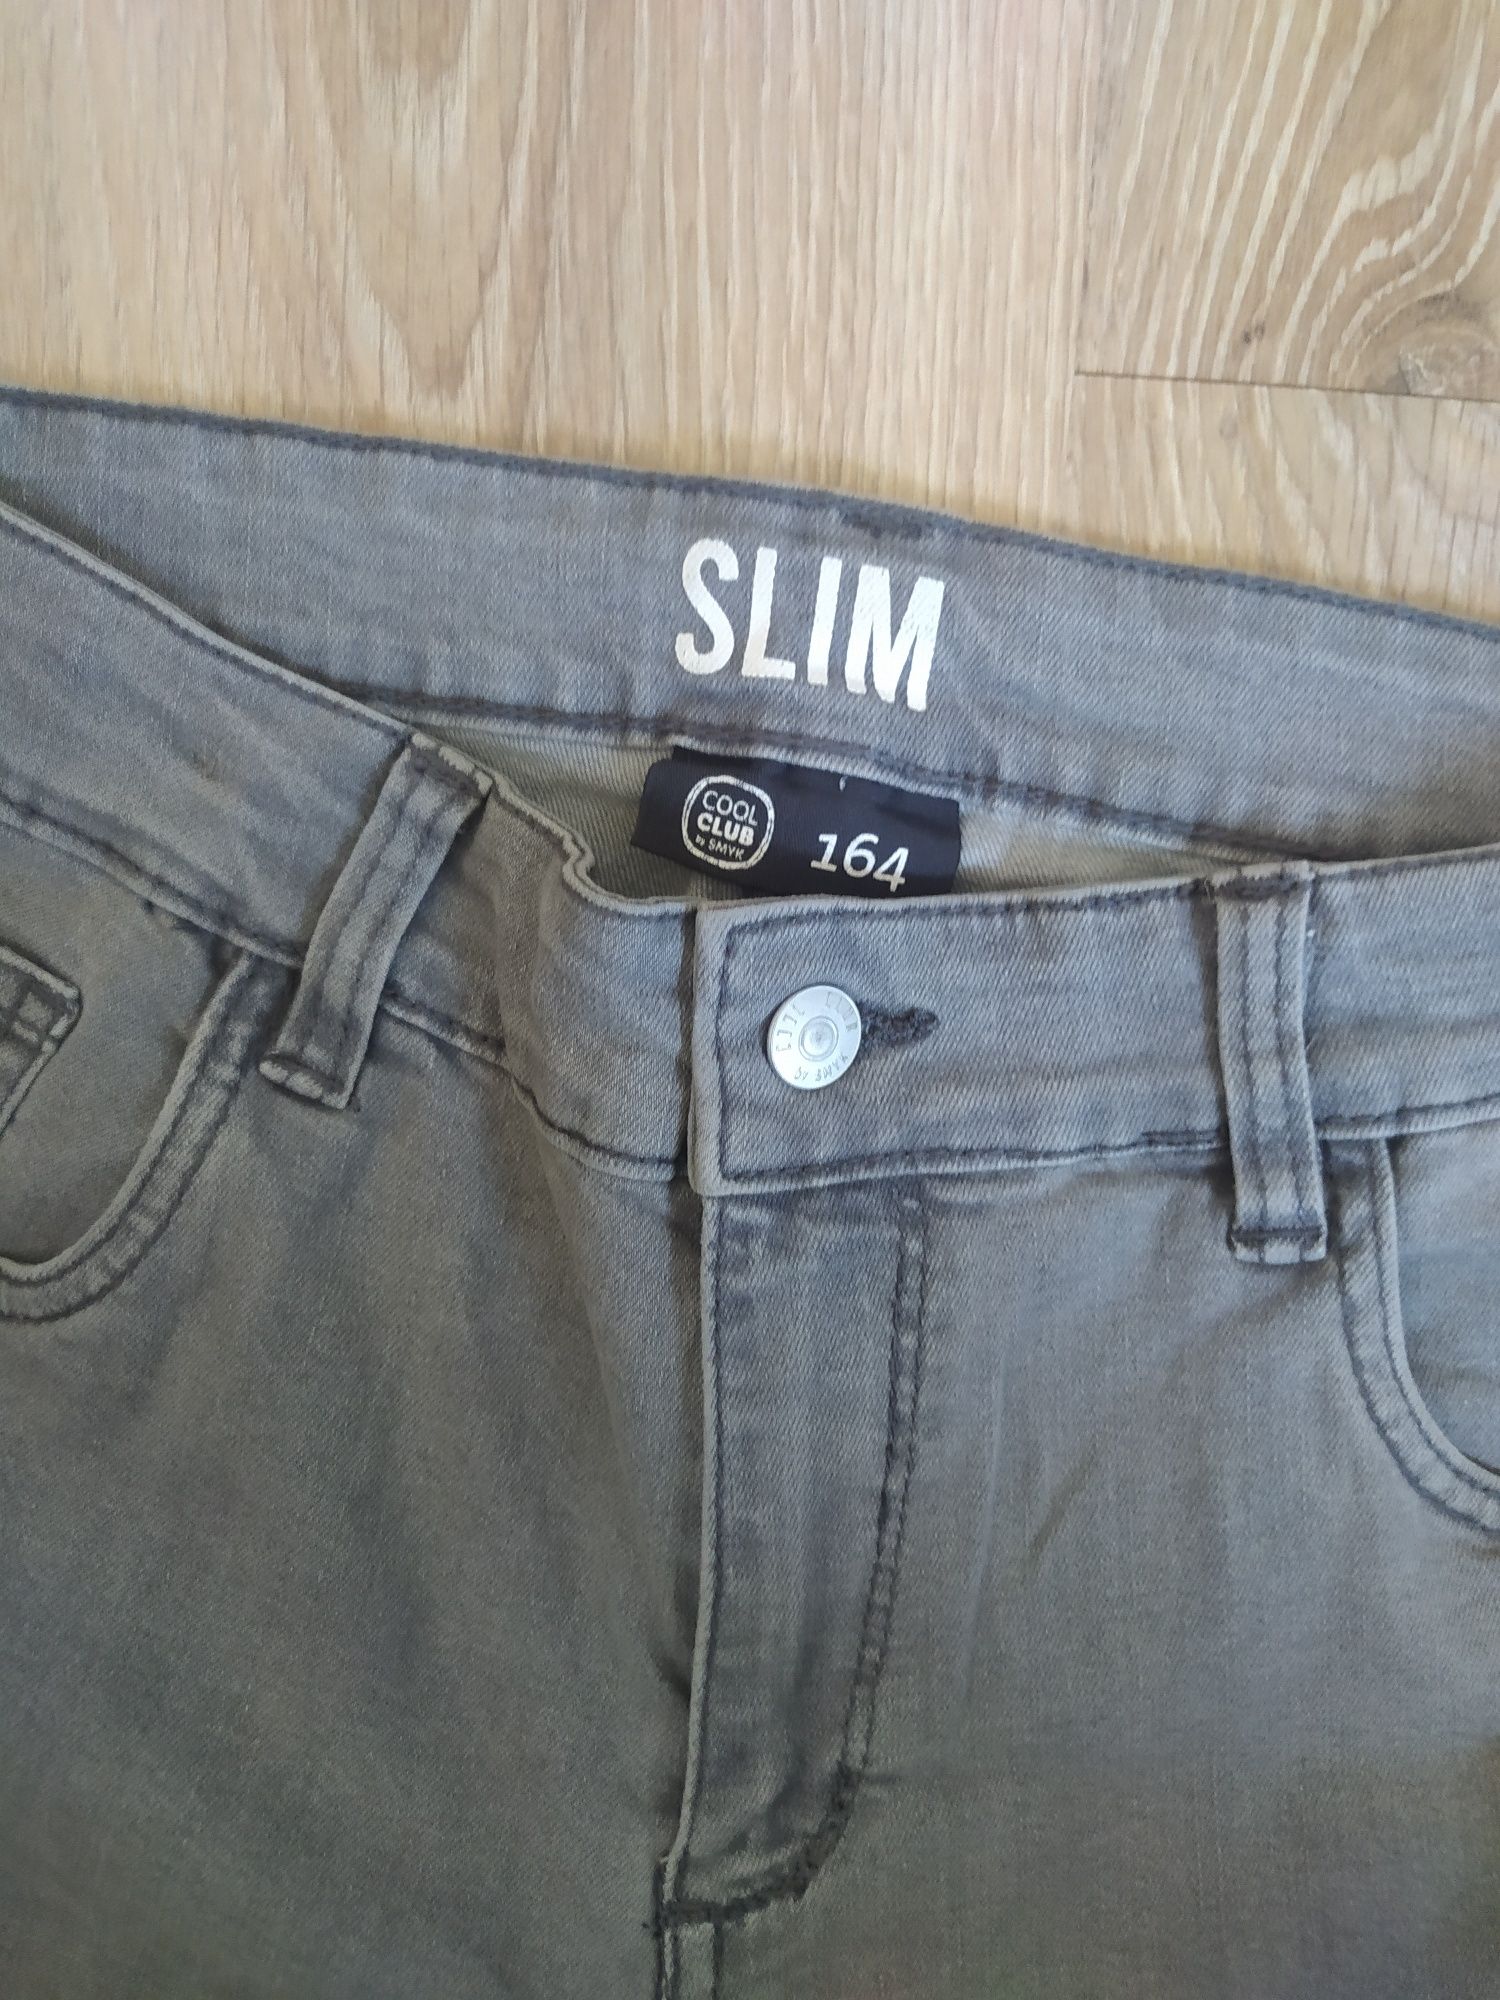 Spodnie jeansy szare CoolClub slim 164